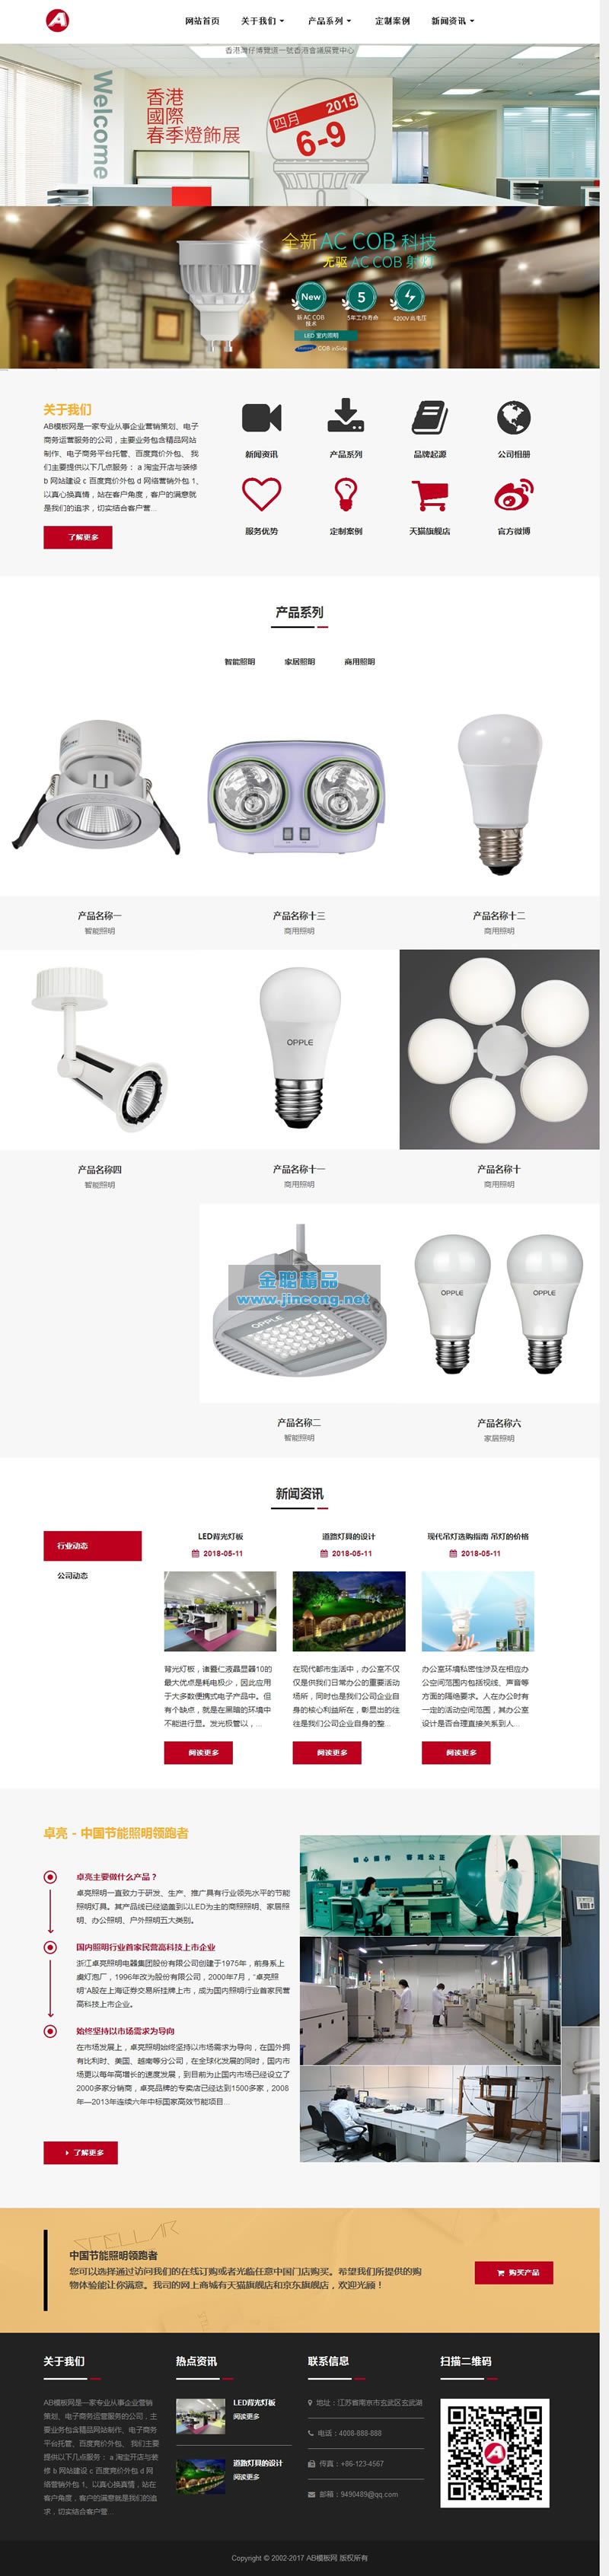 响应式照明灯饰电器类网站源码 HTML5智能LED照明灯具类网站织梦模板